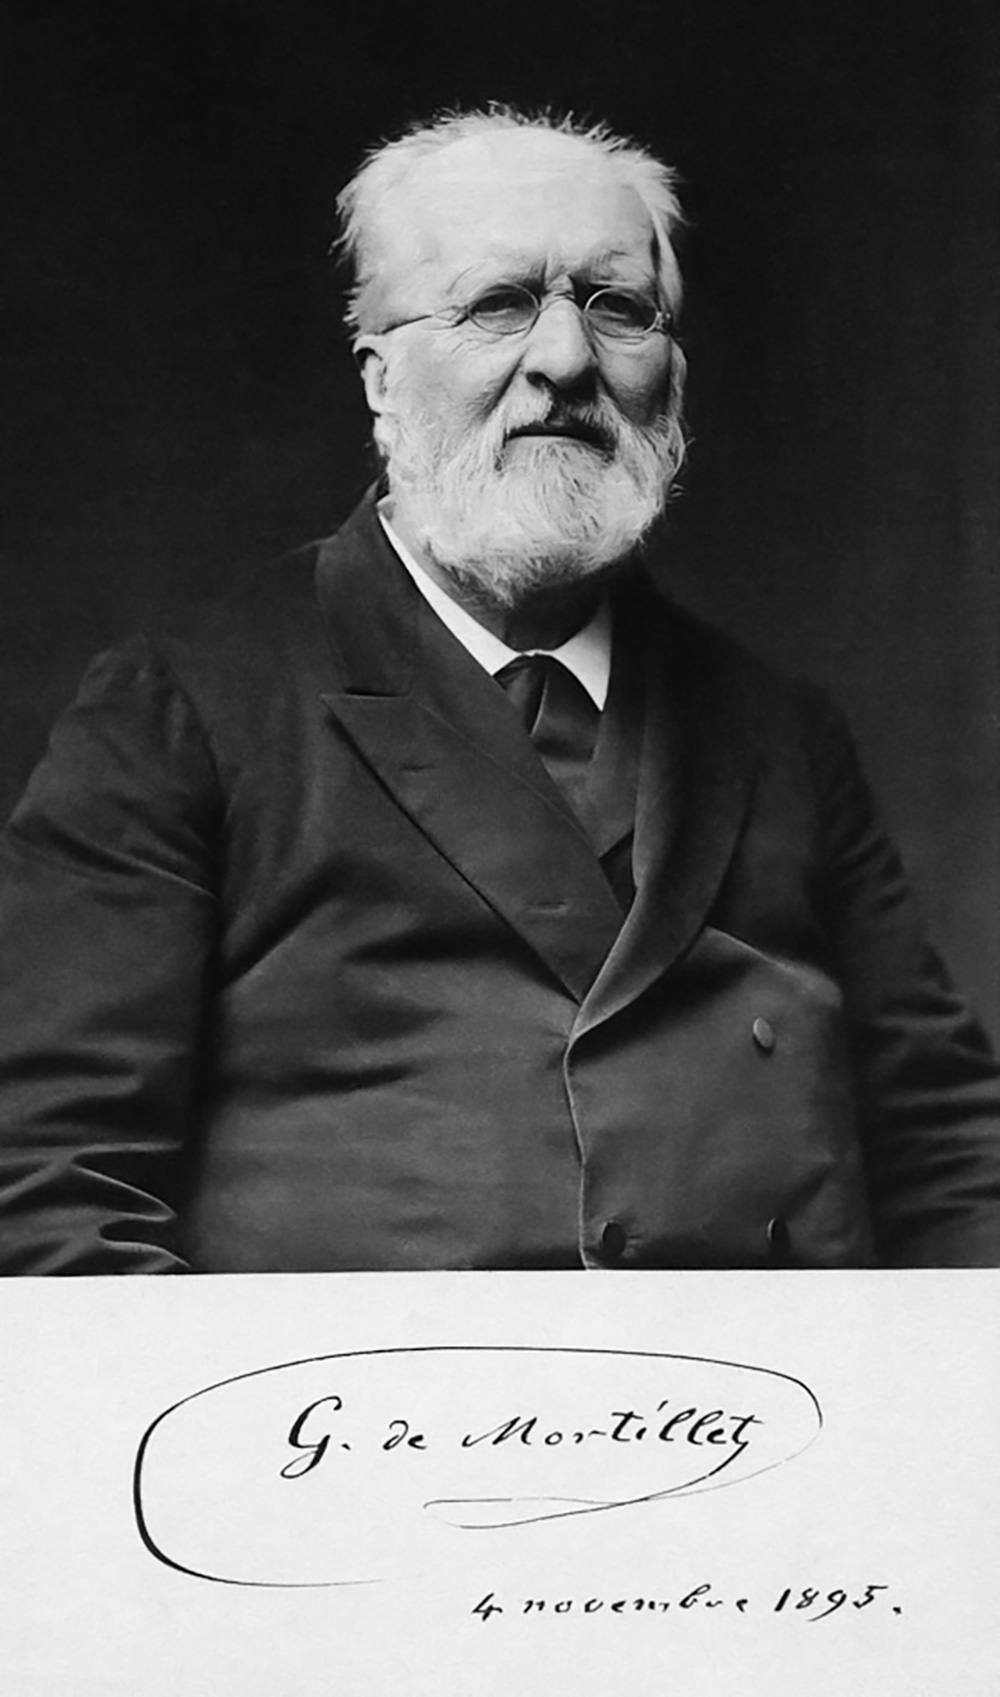 G. de Mortillet, 1895